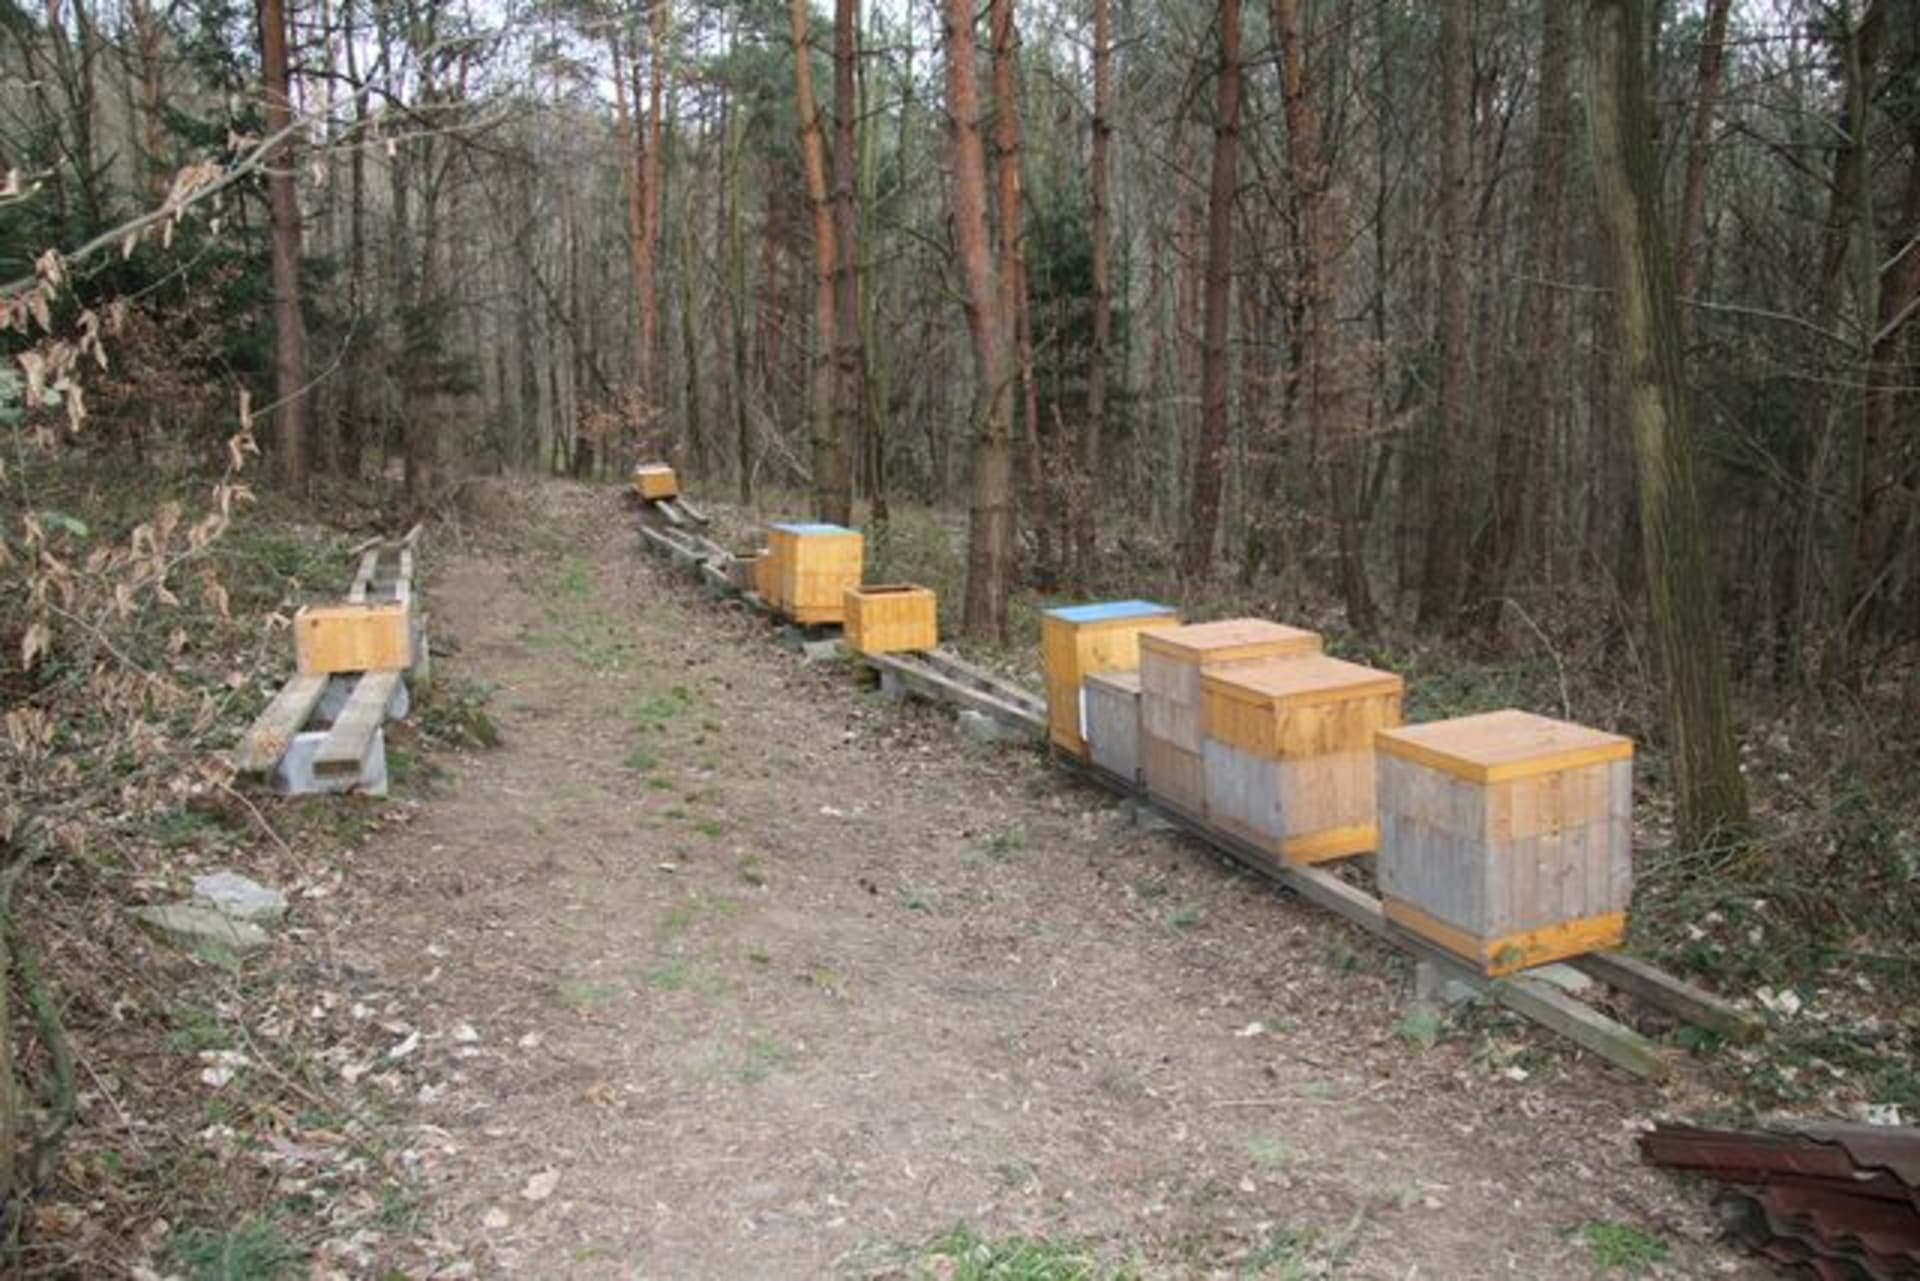 65 úlů zmizelo z Roštína na Kroměřížsku